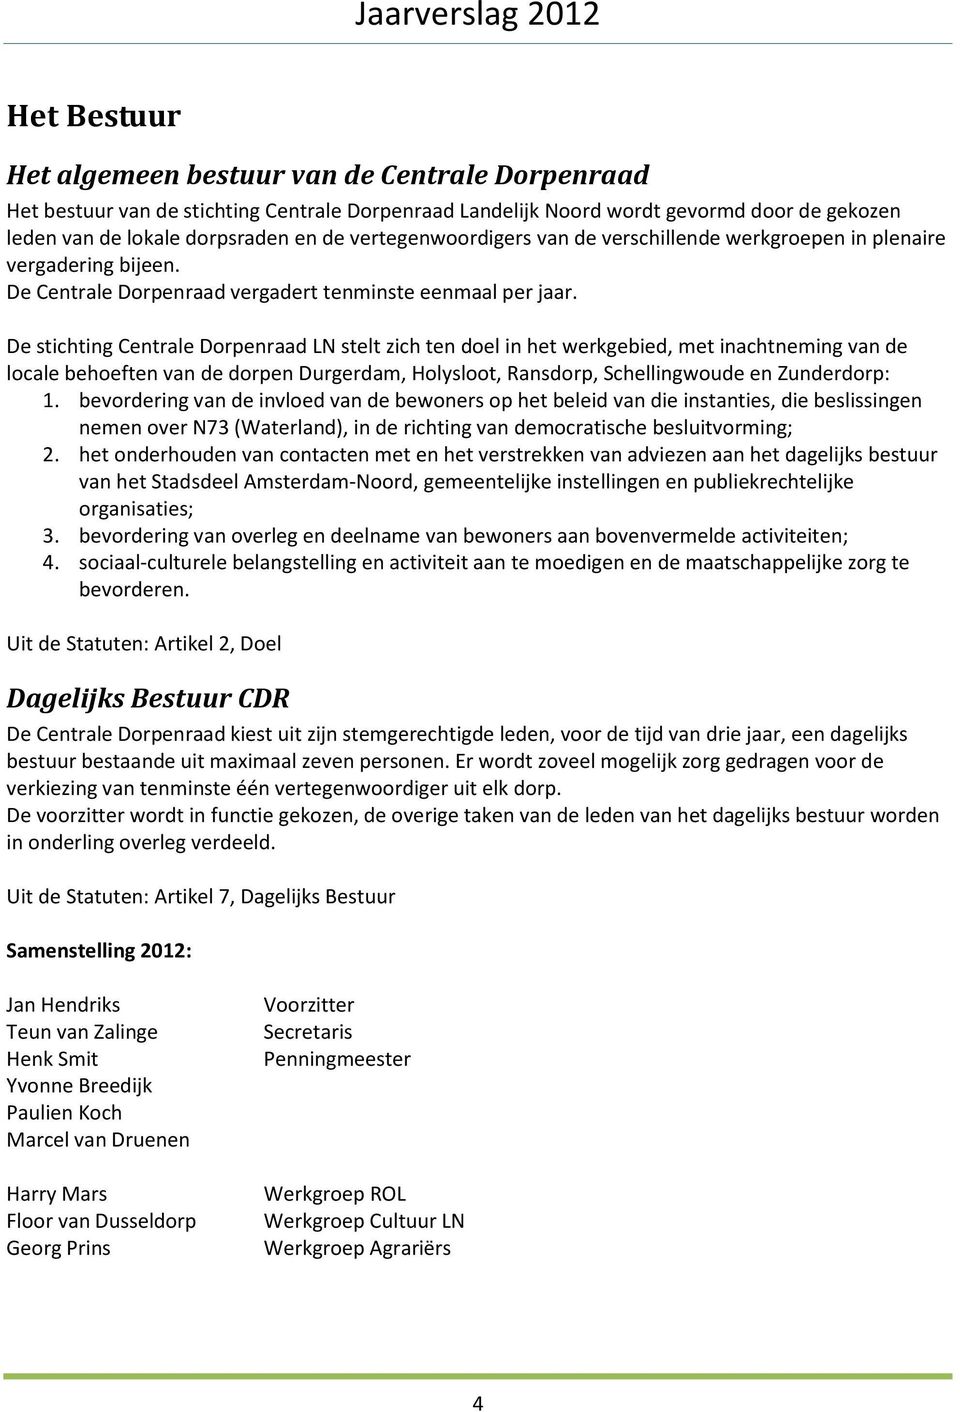 De stichting Centrale Dorpenraad LN stelt zich ten doel in het werkgebied, met inachtneming van de locale behoeften van de dorpen Durgerdam, Holysloot, Ransdorp, Schellingwoude en Zunderdorp: 1.